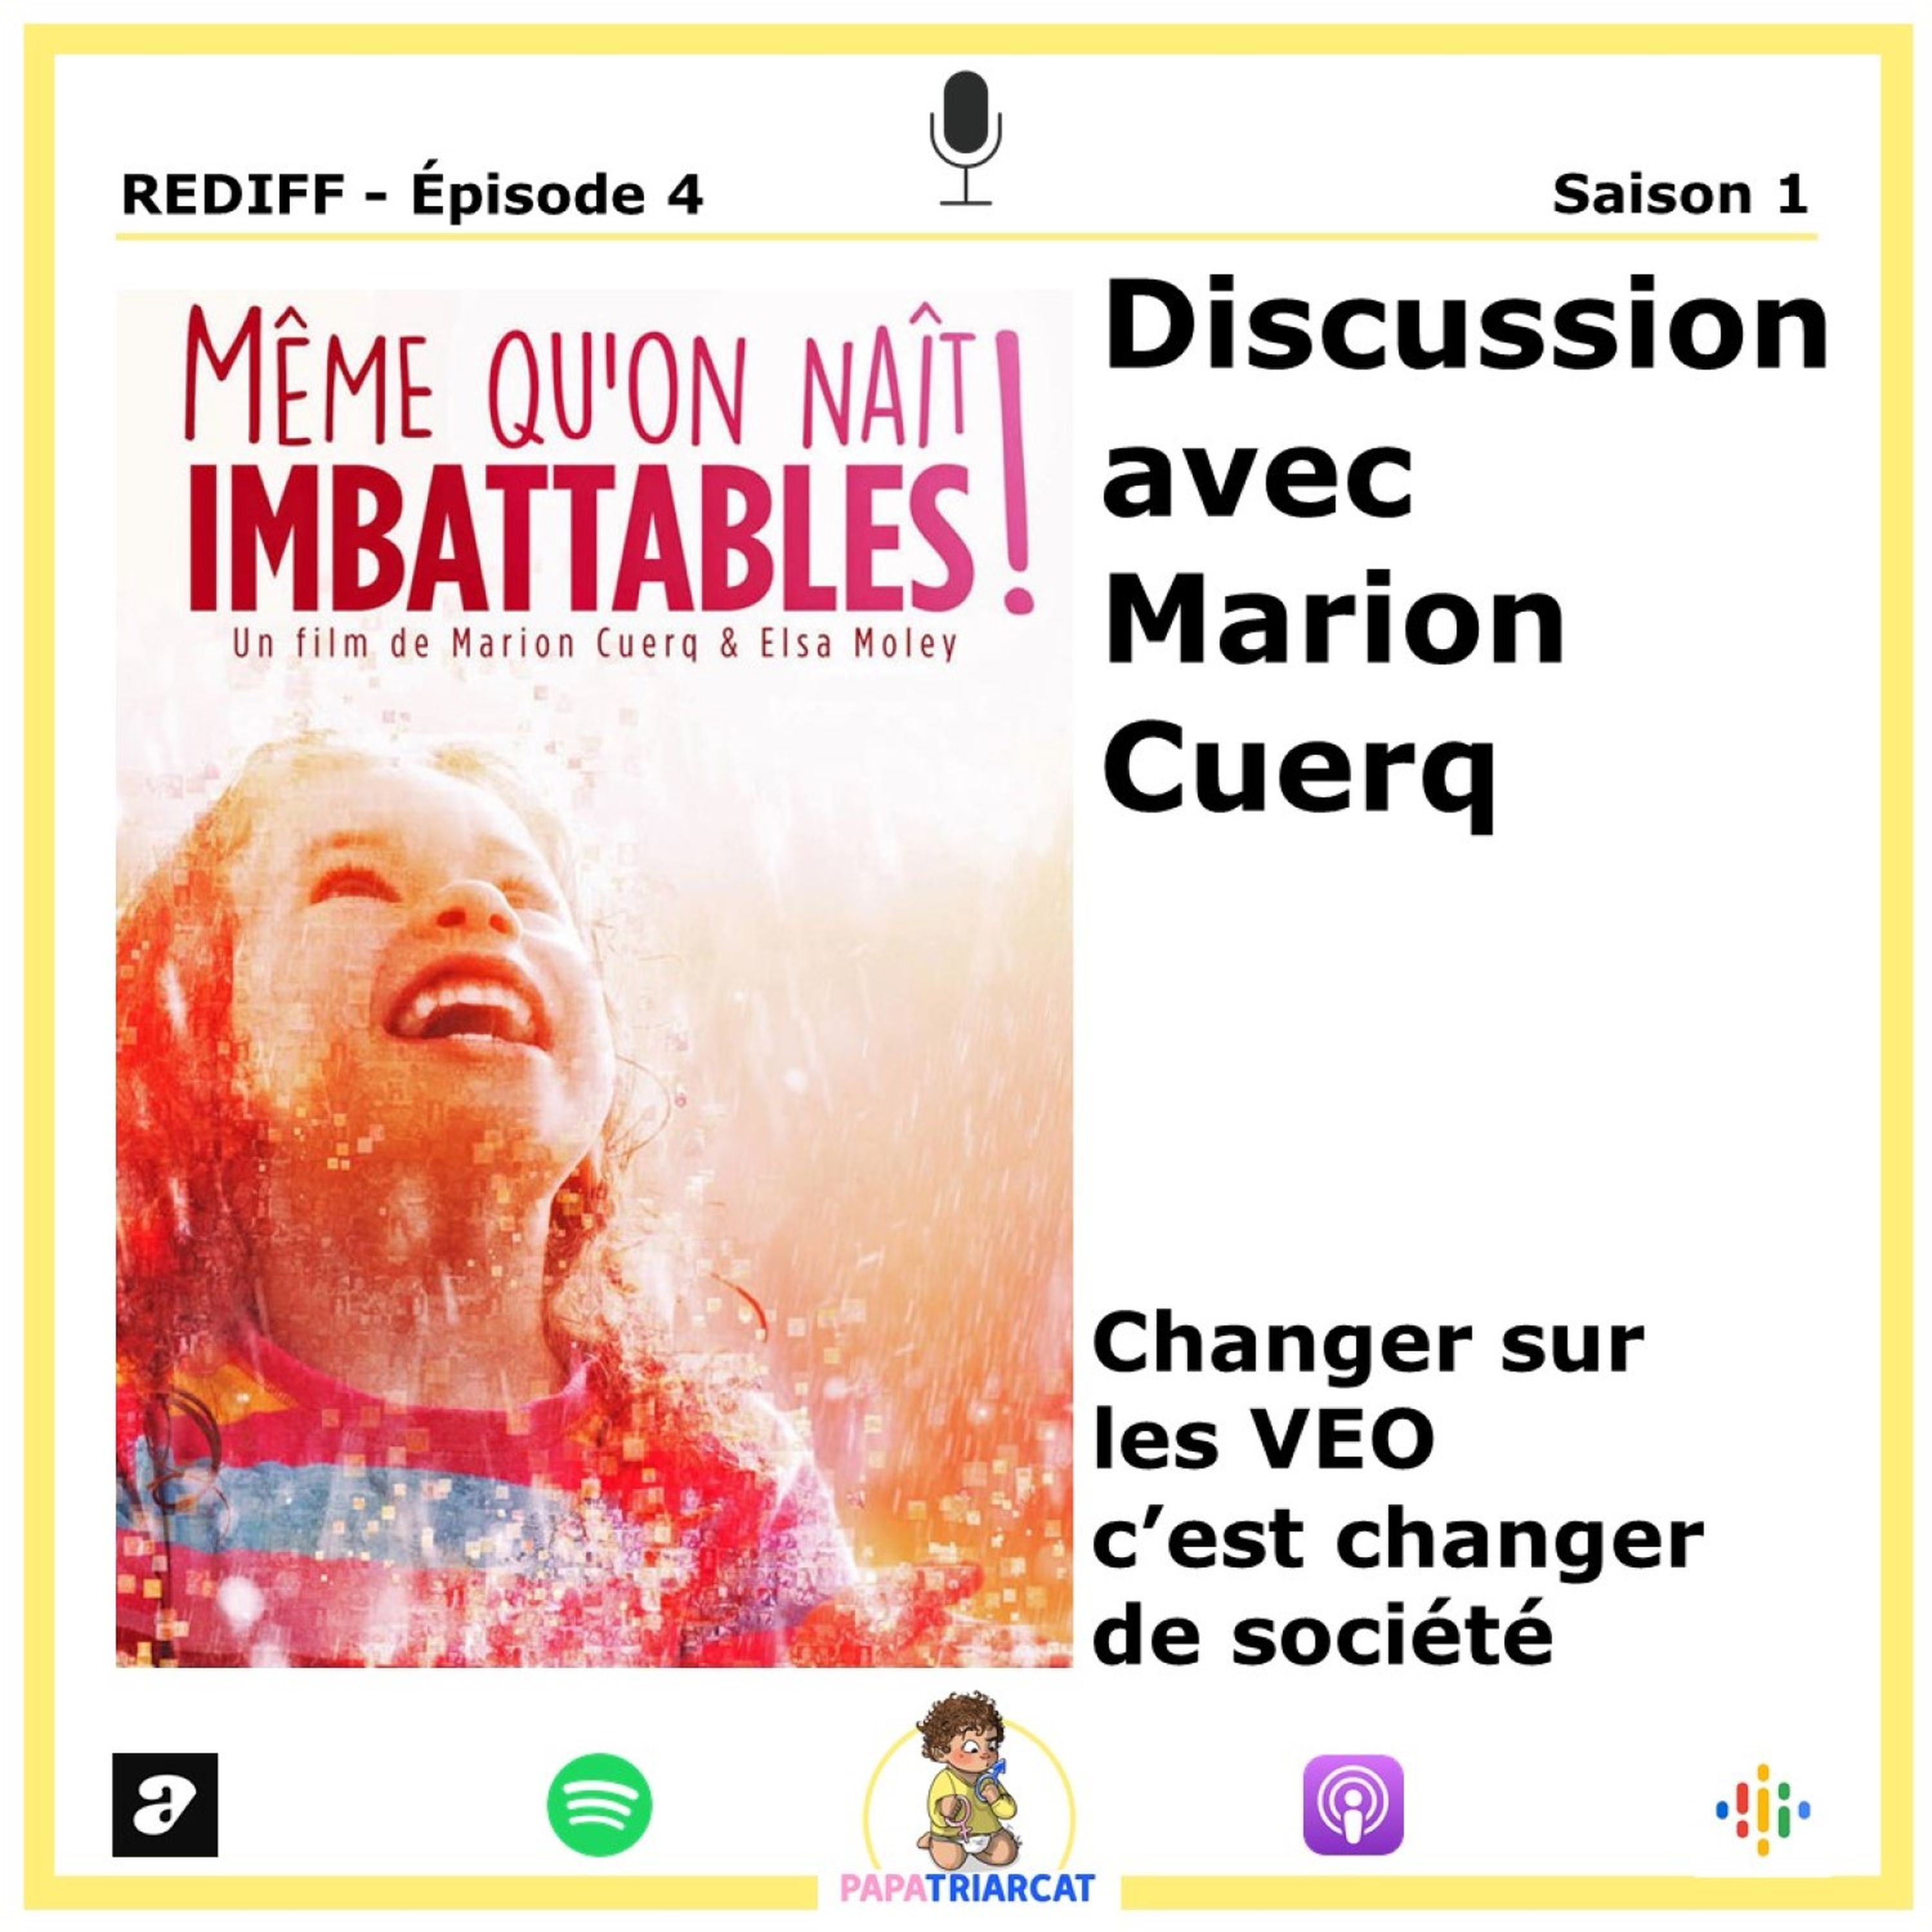 REDIFF EP#4 - Changer sur les VEO c'est changer de société - Discussion avec Marion Cuerq